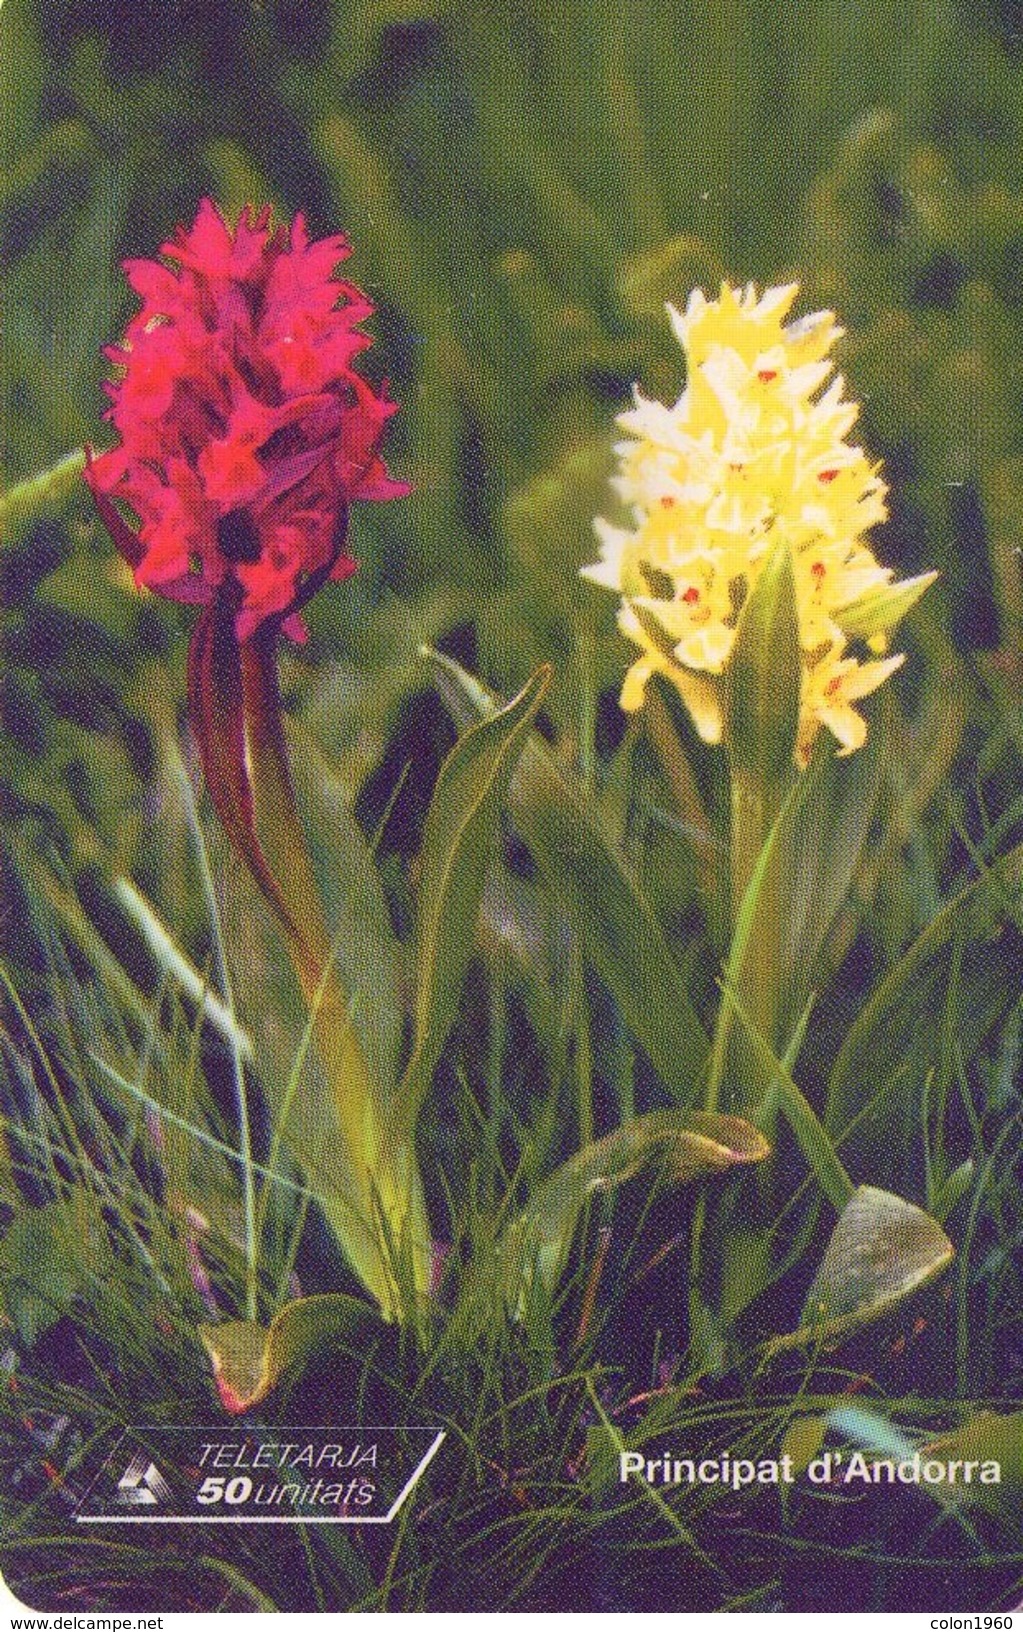 ANDORRA. Orchid - ORQUIDEA. 1999-02. 20000 Ex. AD-STA-0101. (089) - Andorra